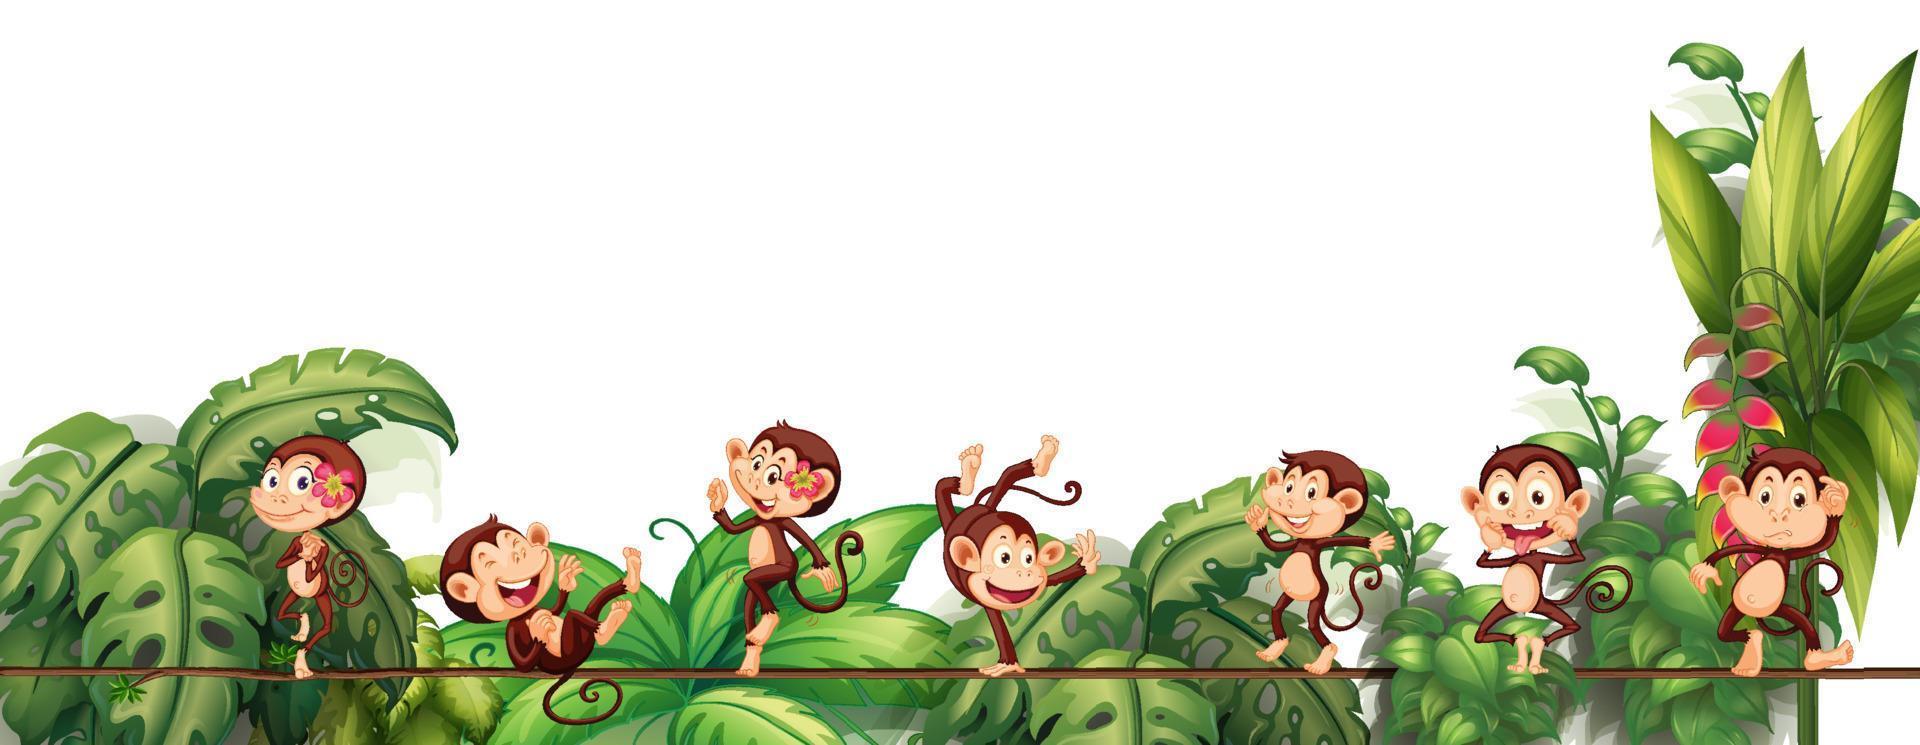 Diferentes personajes de dibujos animados de monos en la cuerda con hojas tropicales. vector